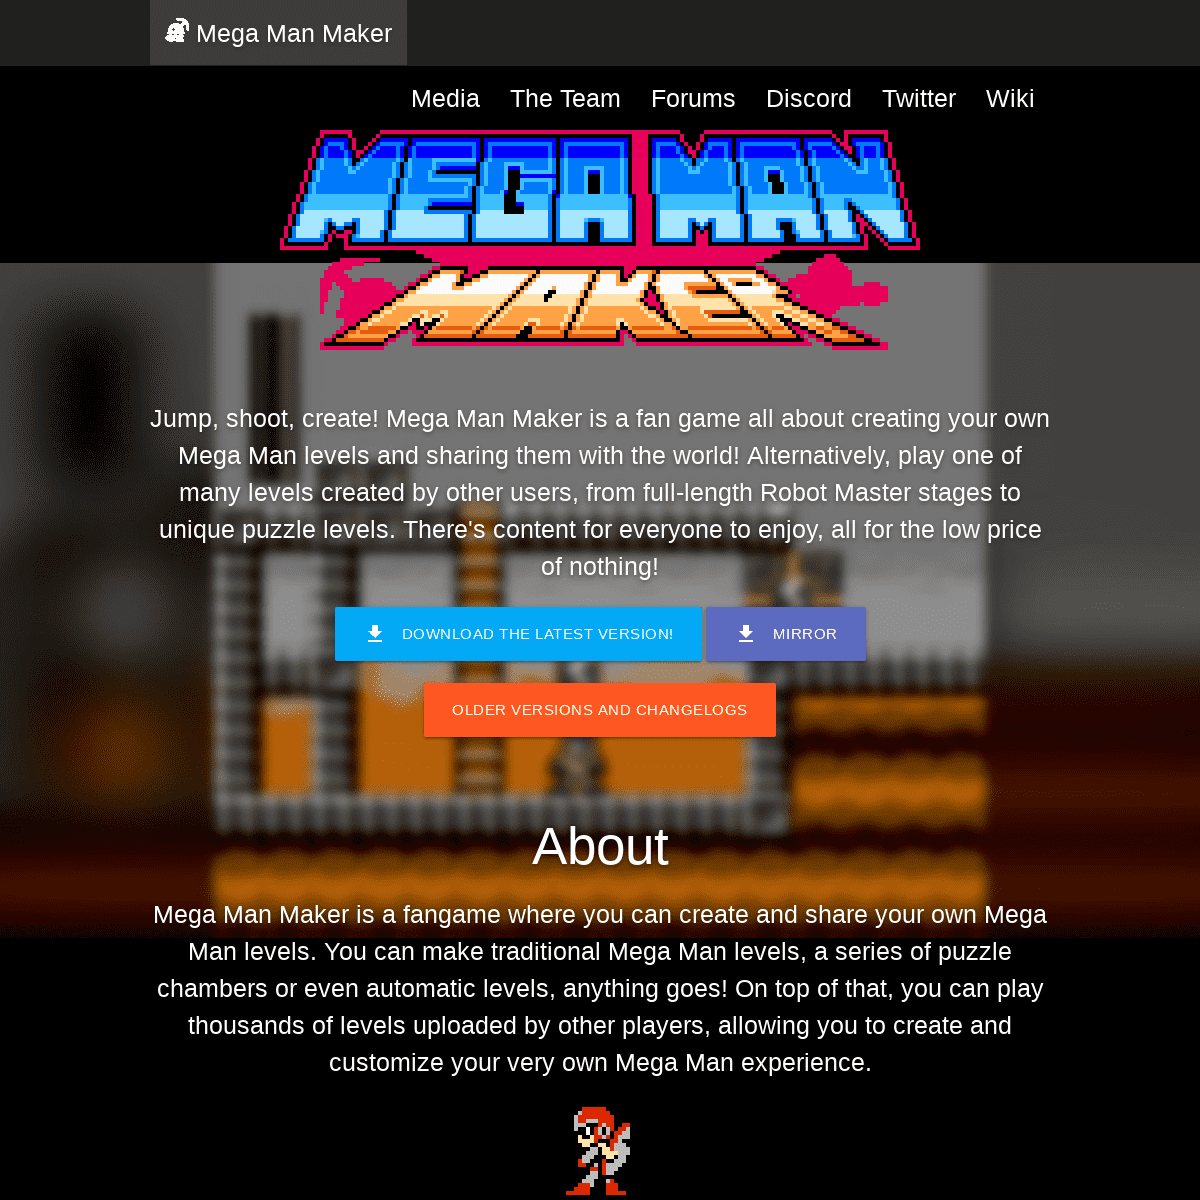 A complete backup of megamanmaker.com